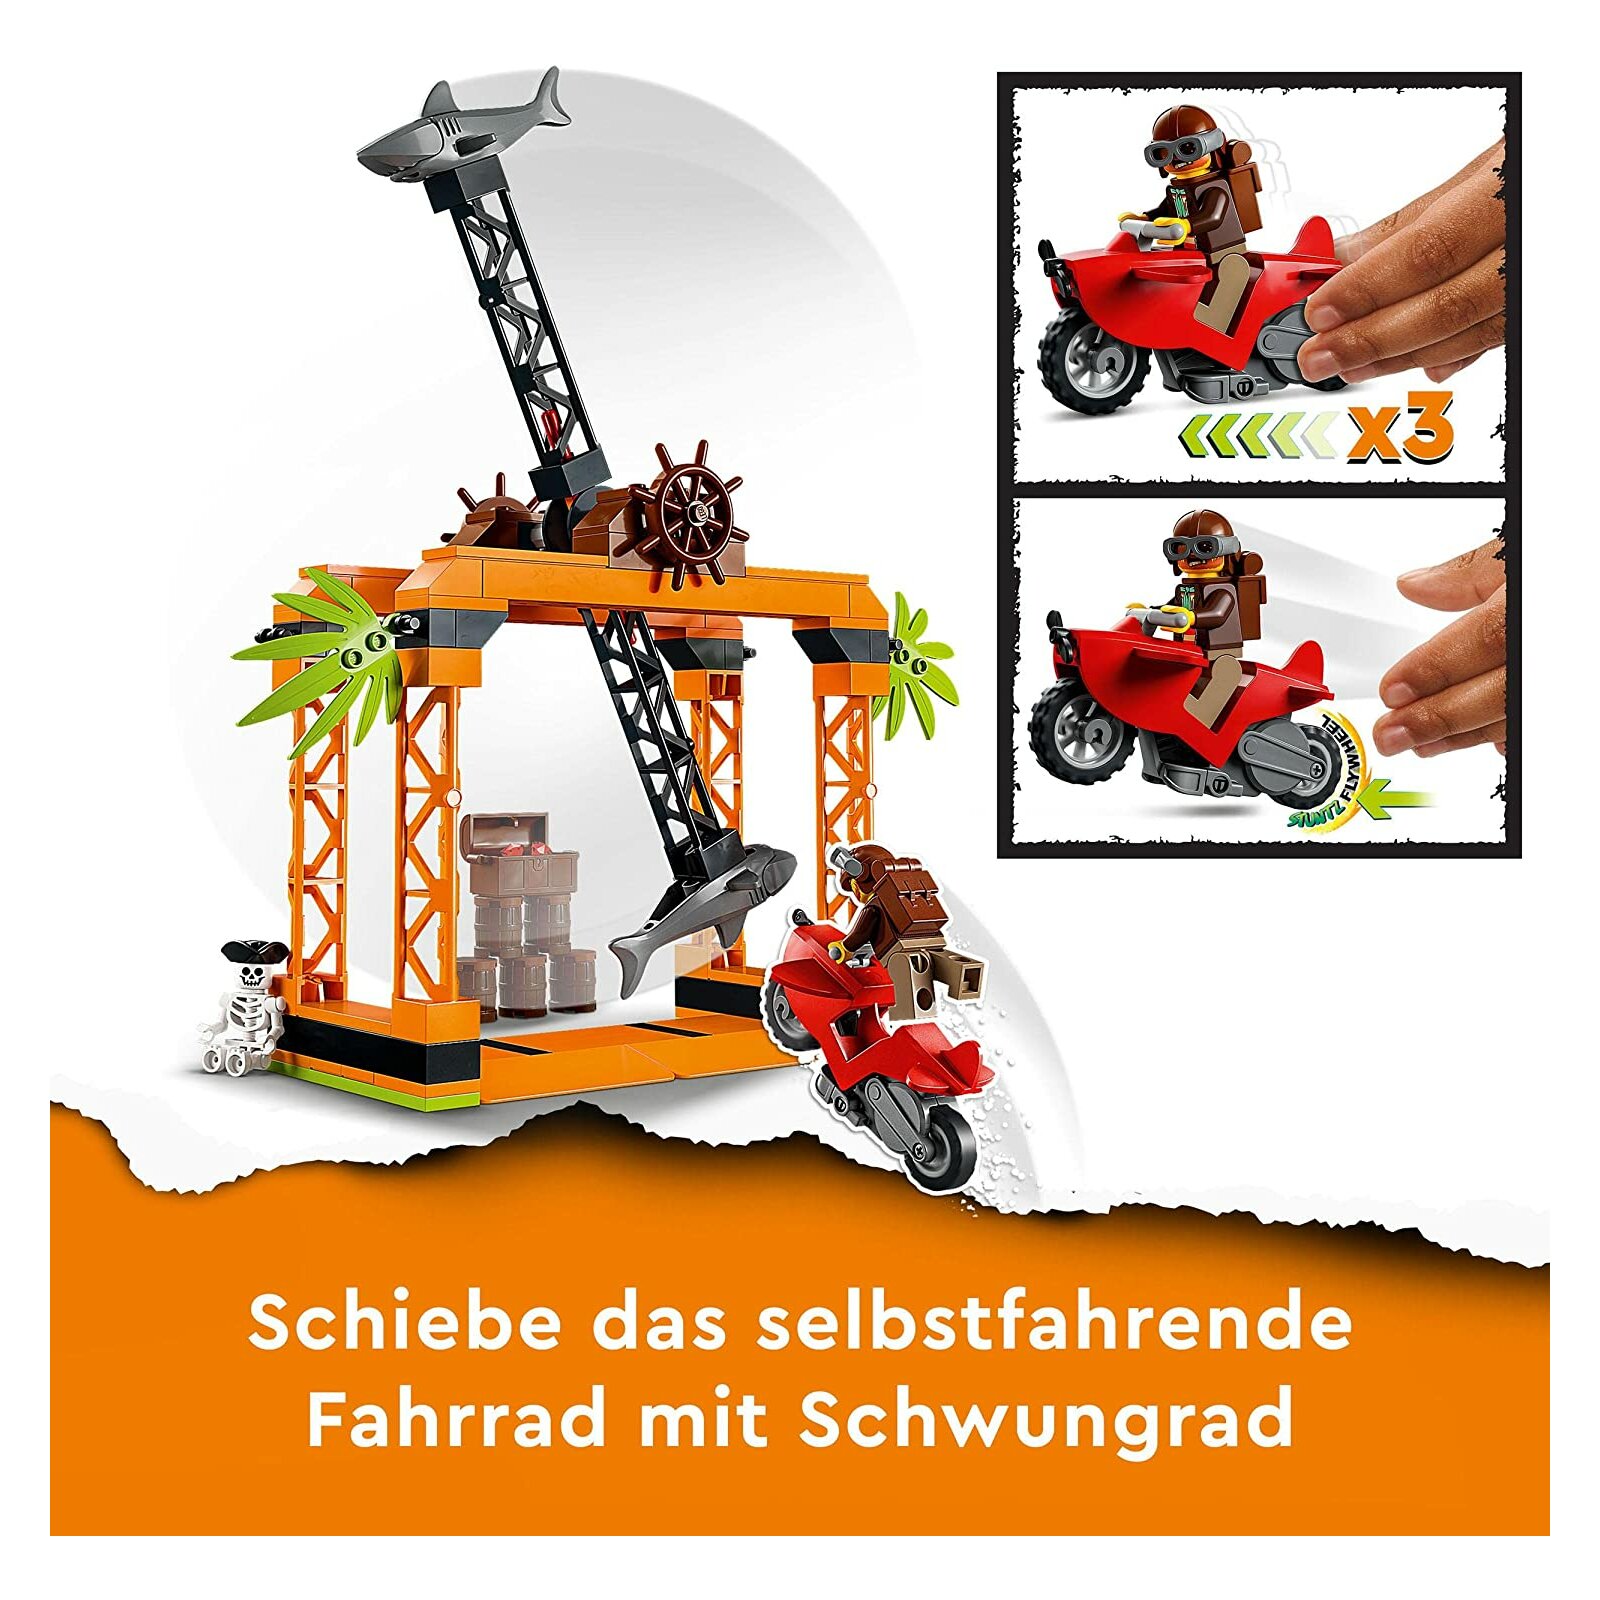 Stuntz € - Haiangriff-Stuntchallenge, 19,99 City 60342 LEGO -